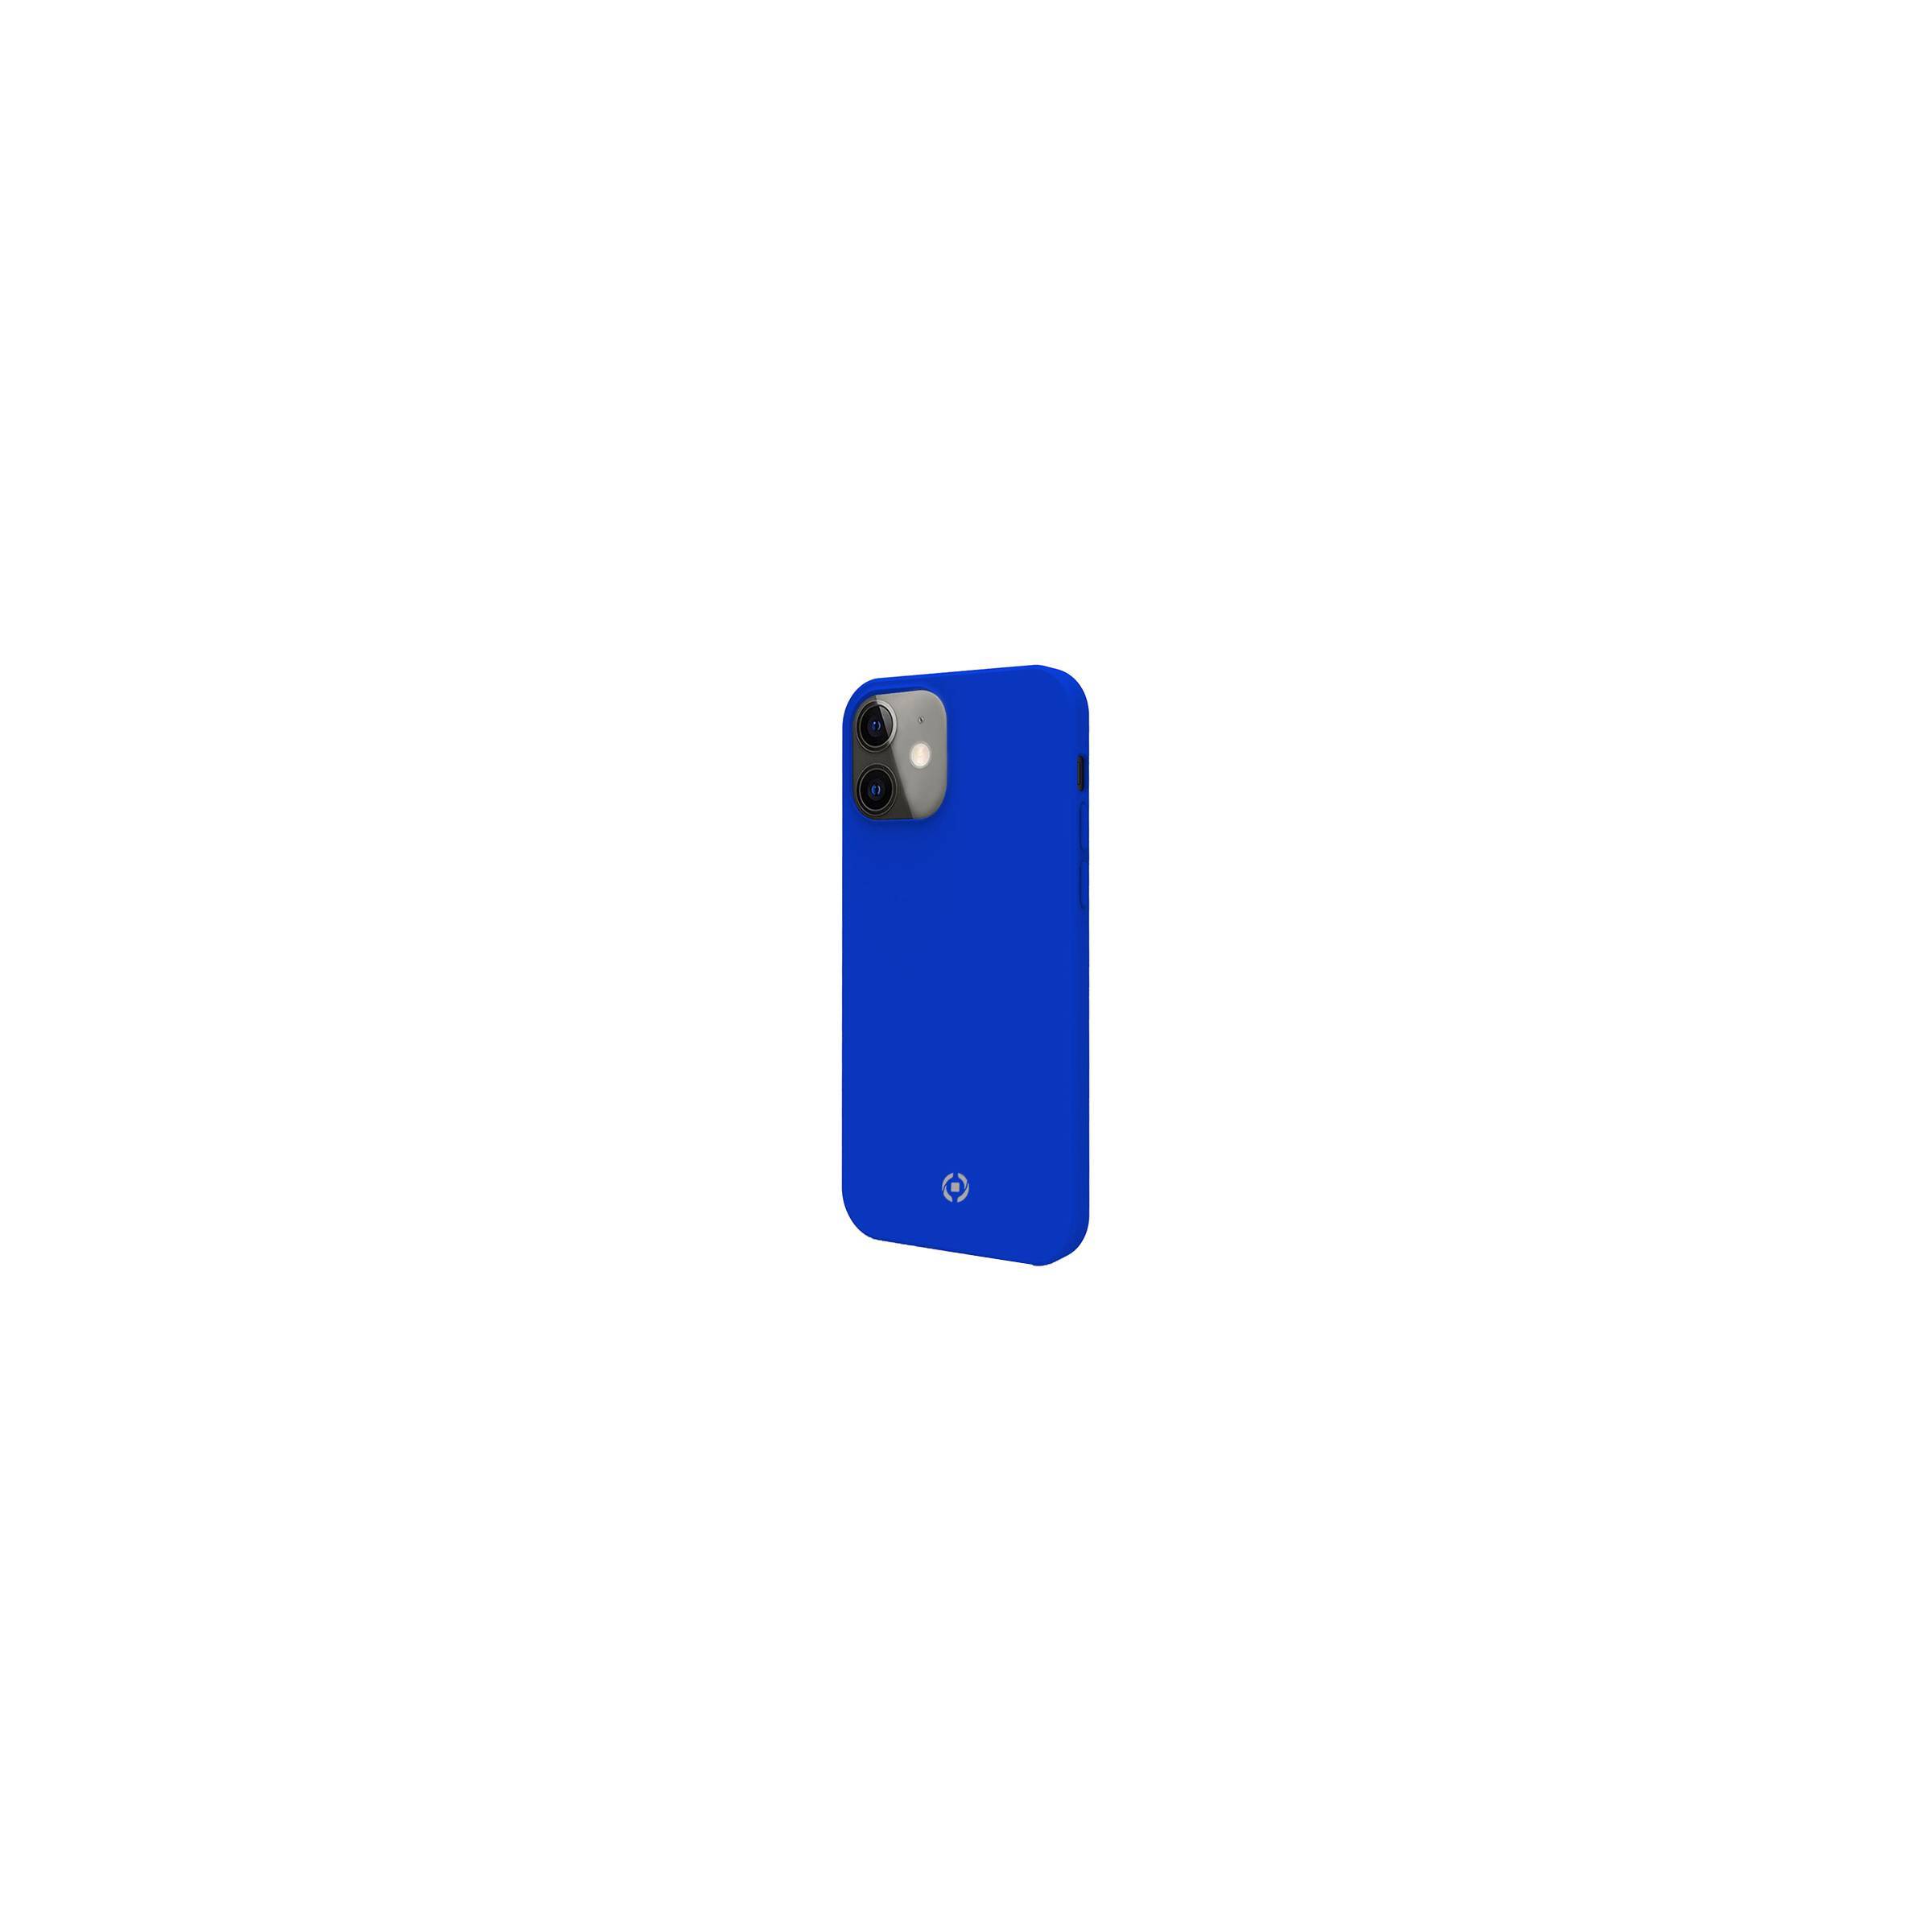 Bilde av Celly Feeling Iphone 12 Mini Silikone Cover, Blå